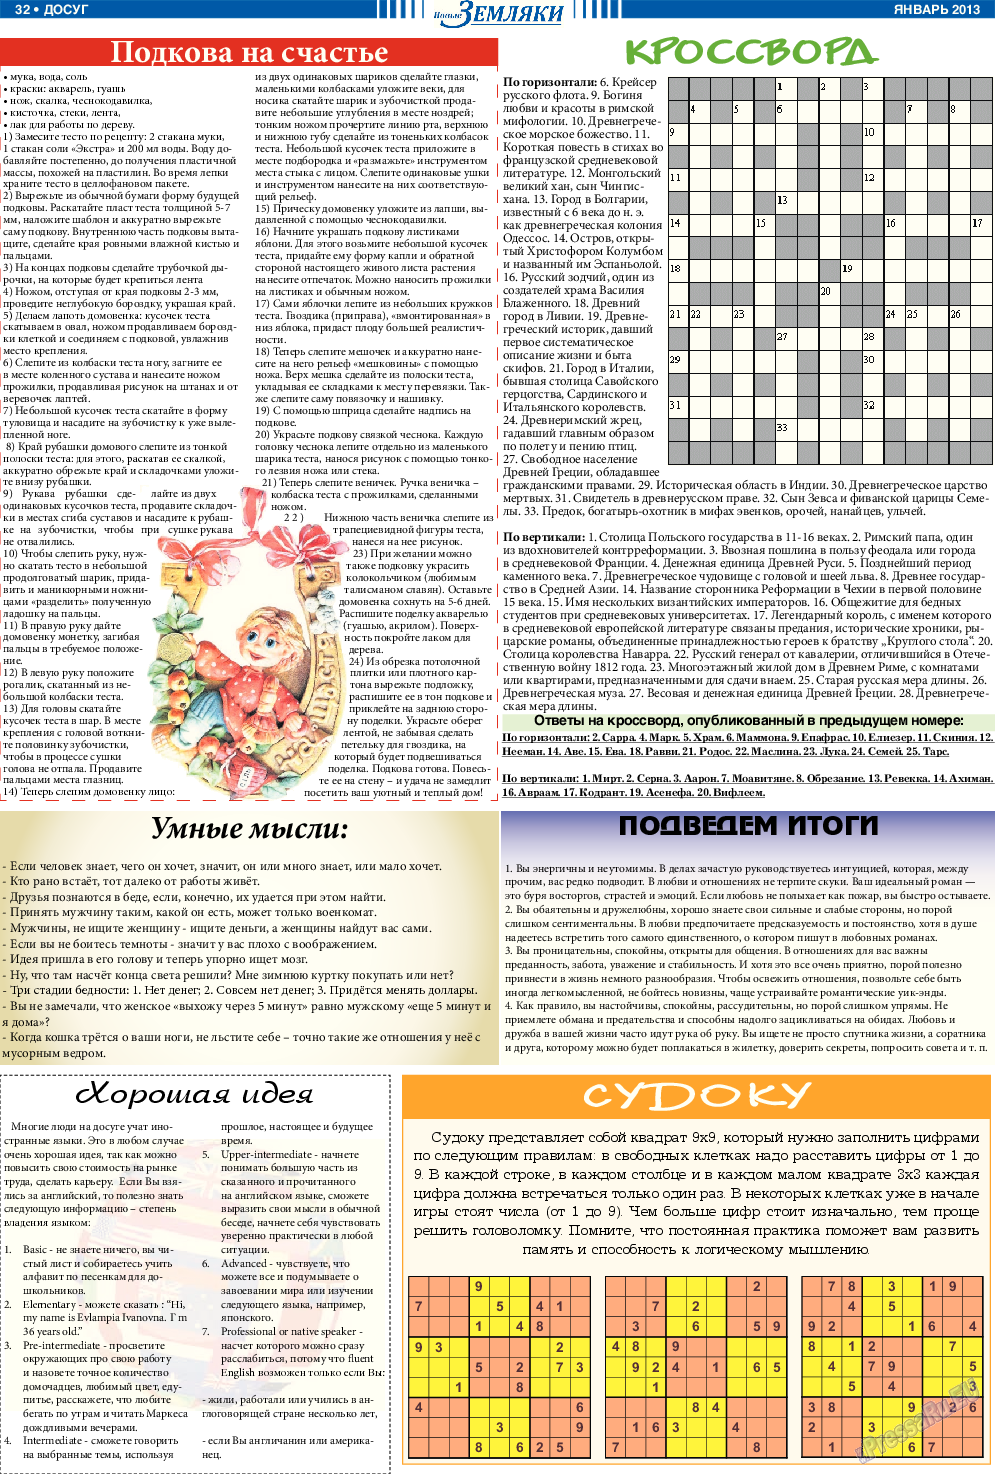 Новые Земляки, газета. 2013 №1 стр.32